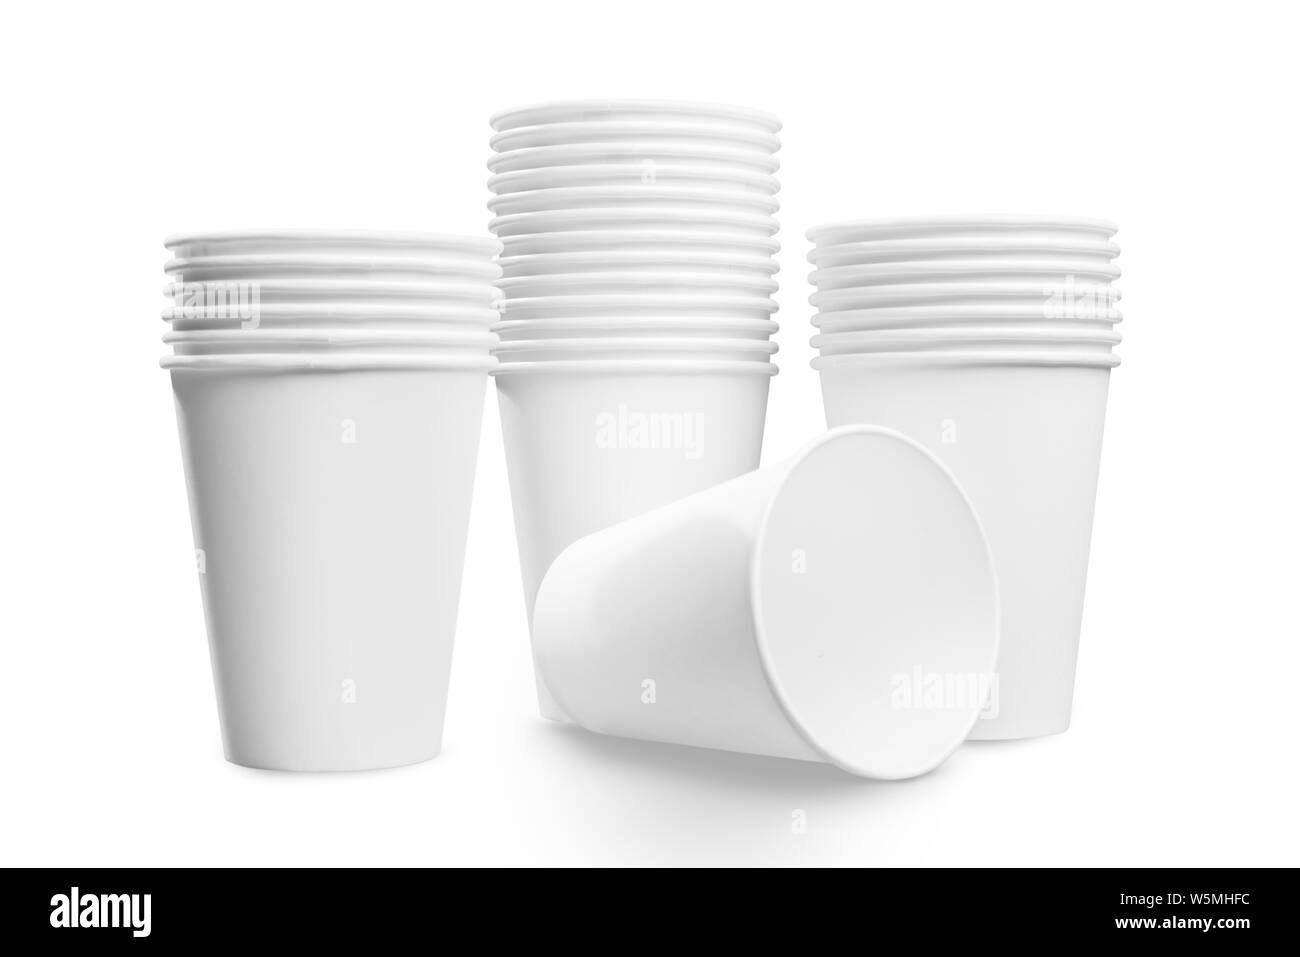 Styrofoam cups Banque d'images noir et blanc - Alamy